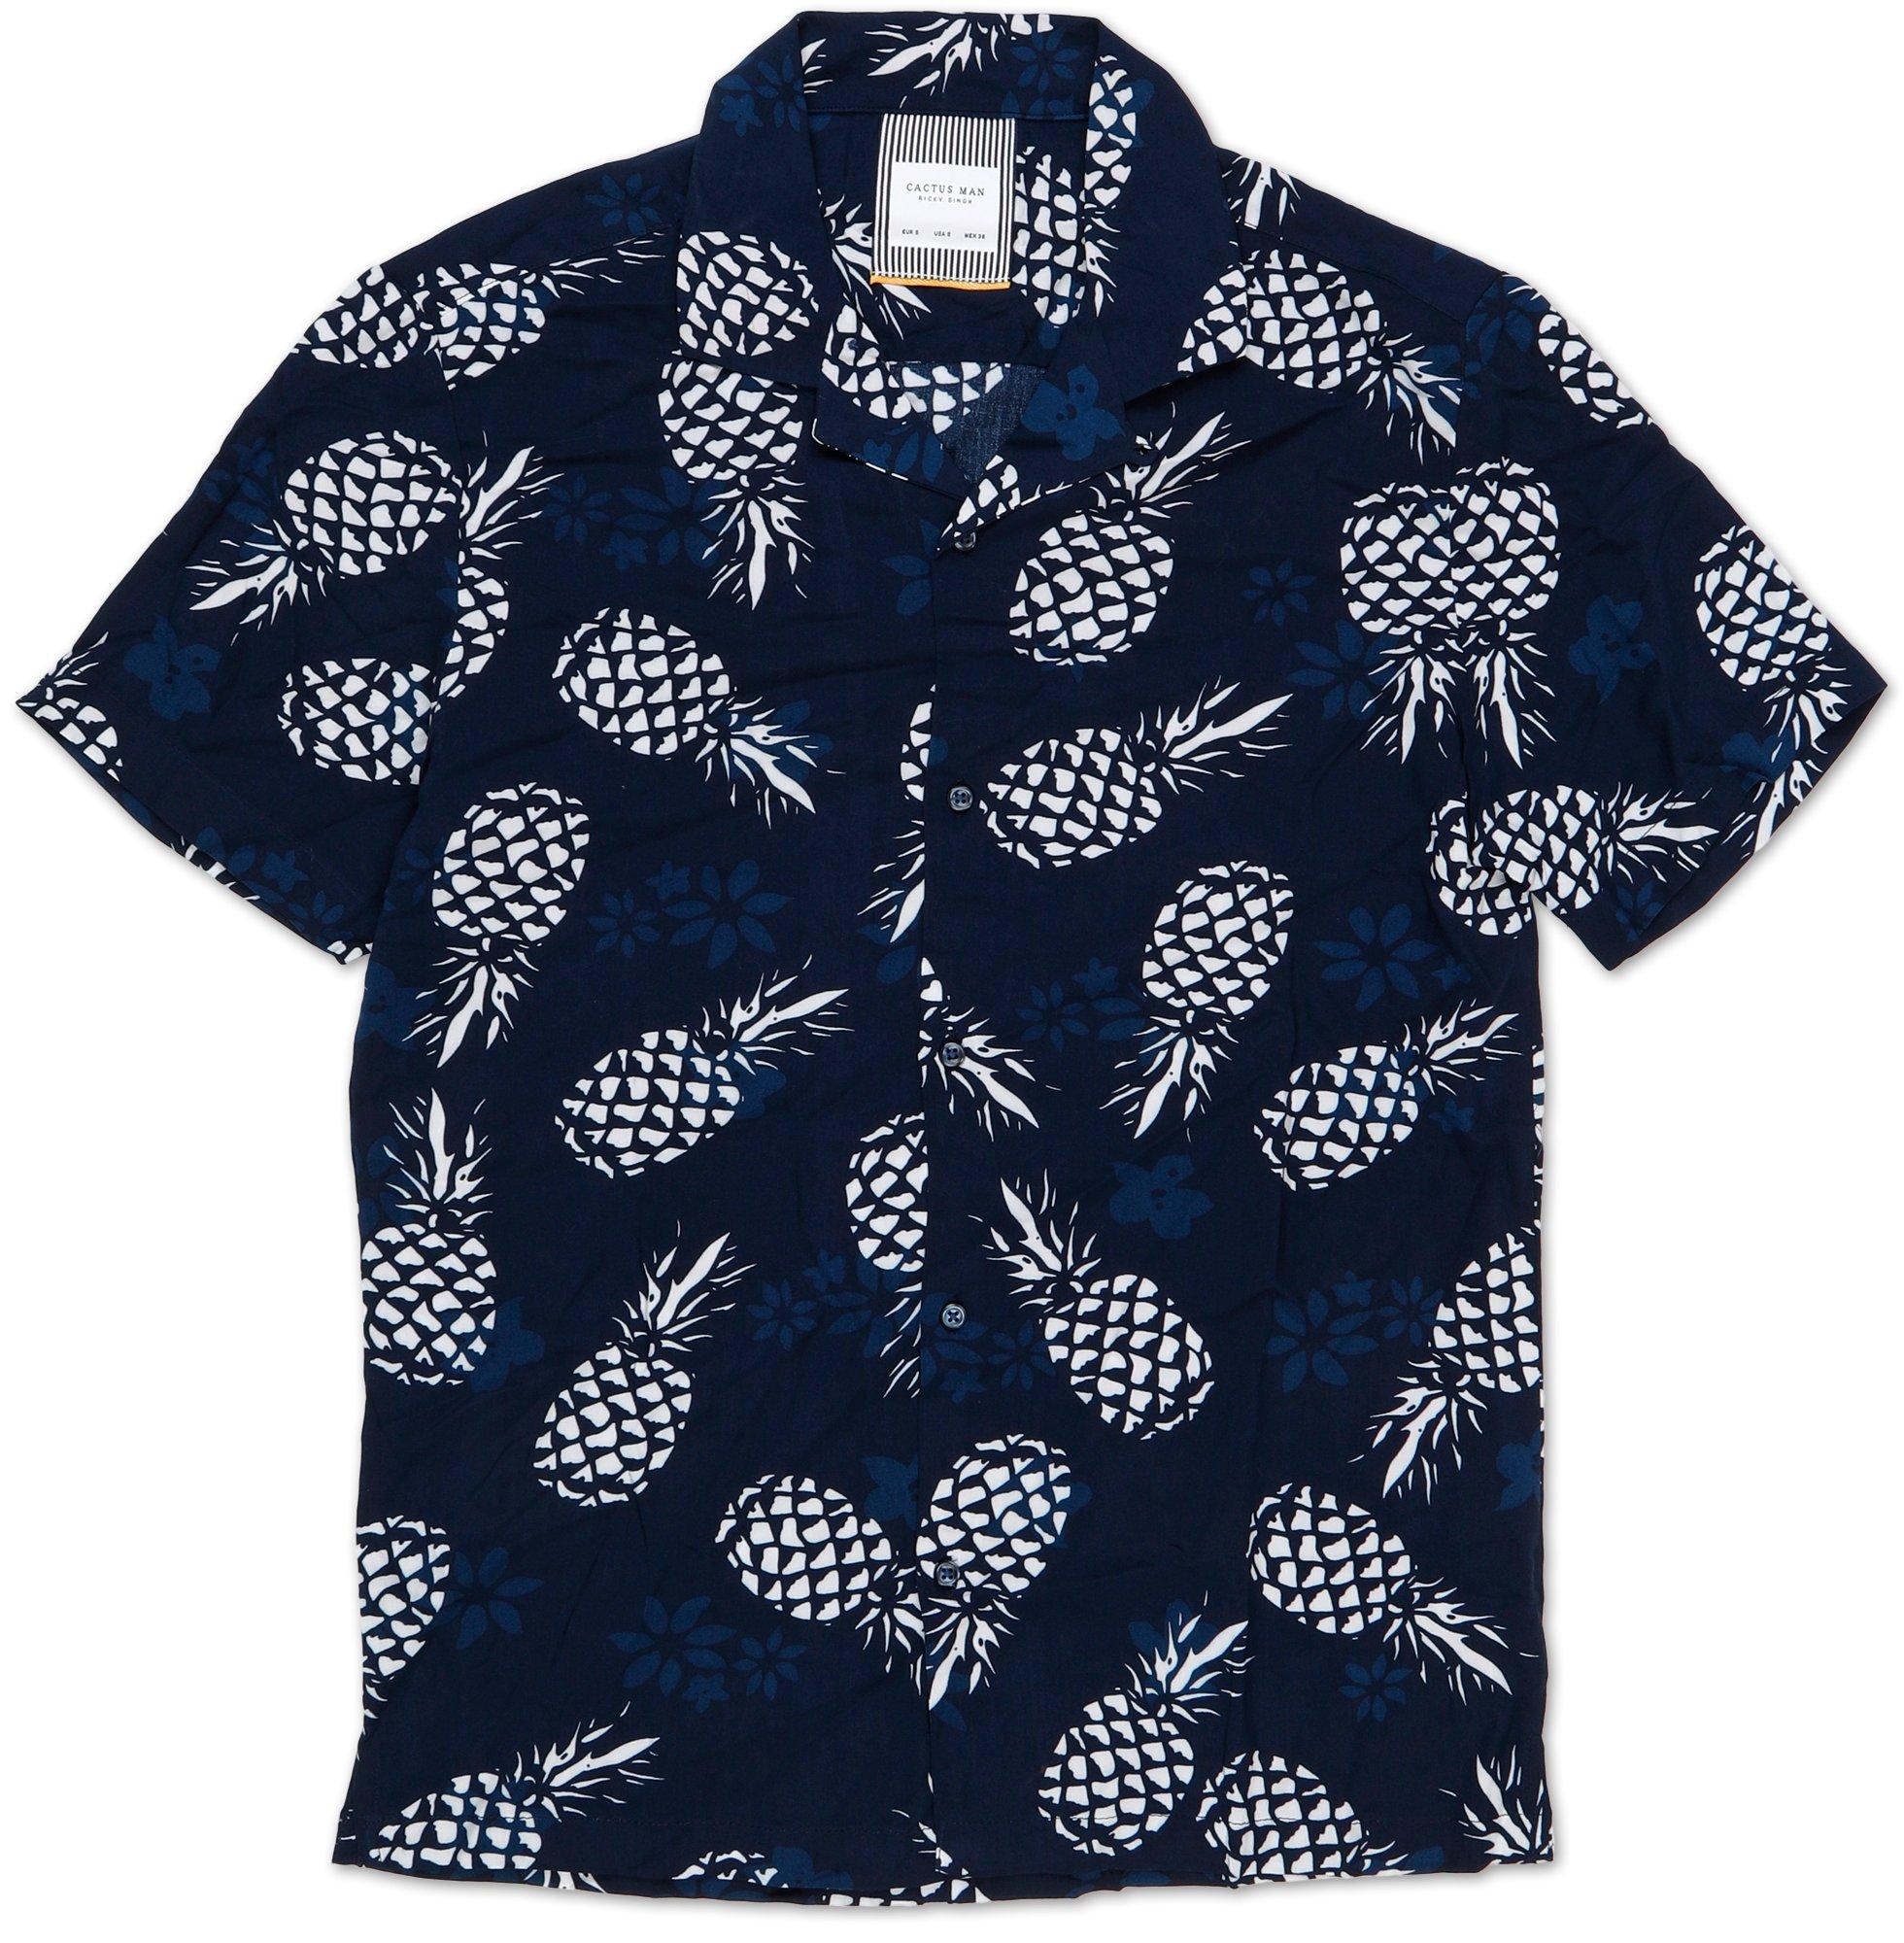 Men's Pineapple Button Up Shirt - Blue ...